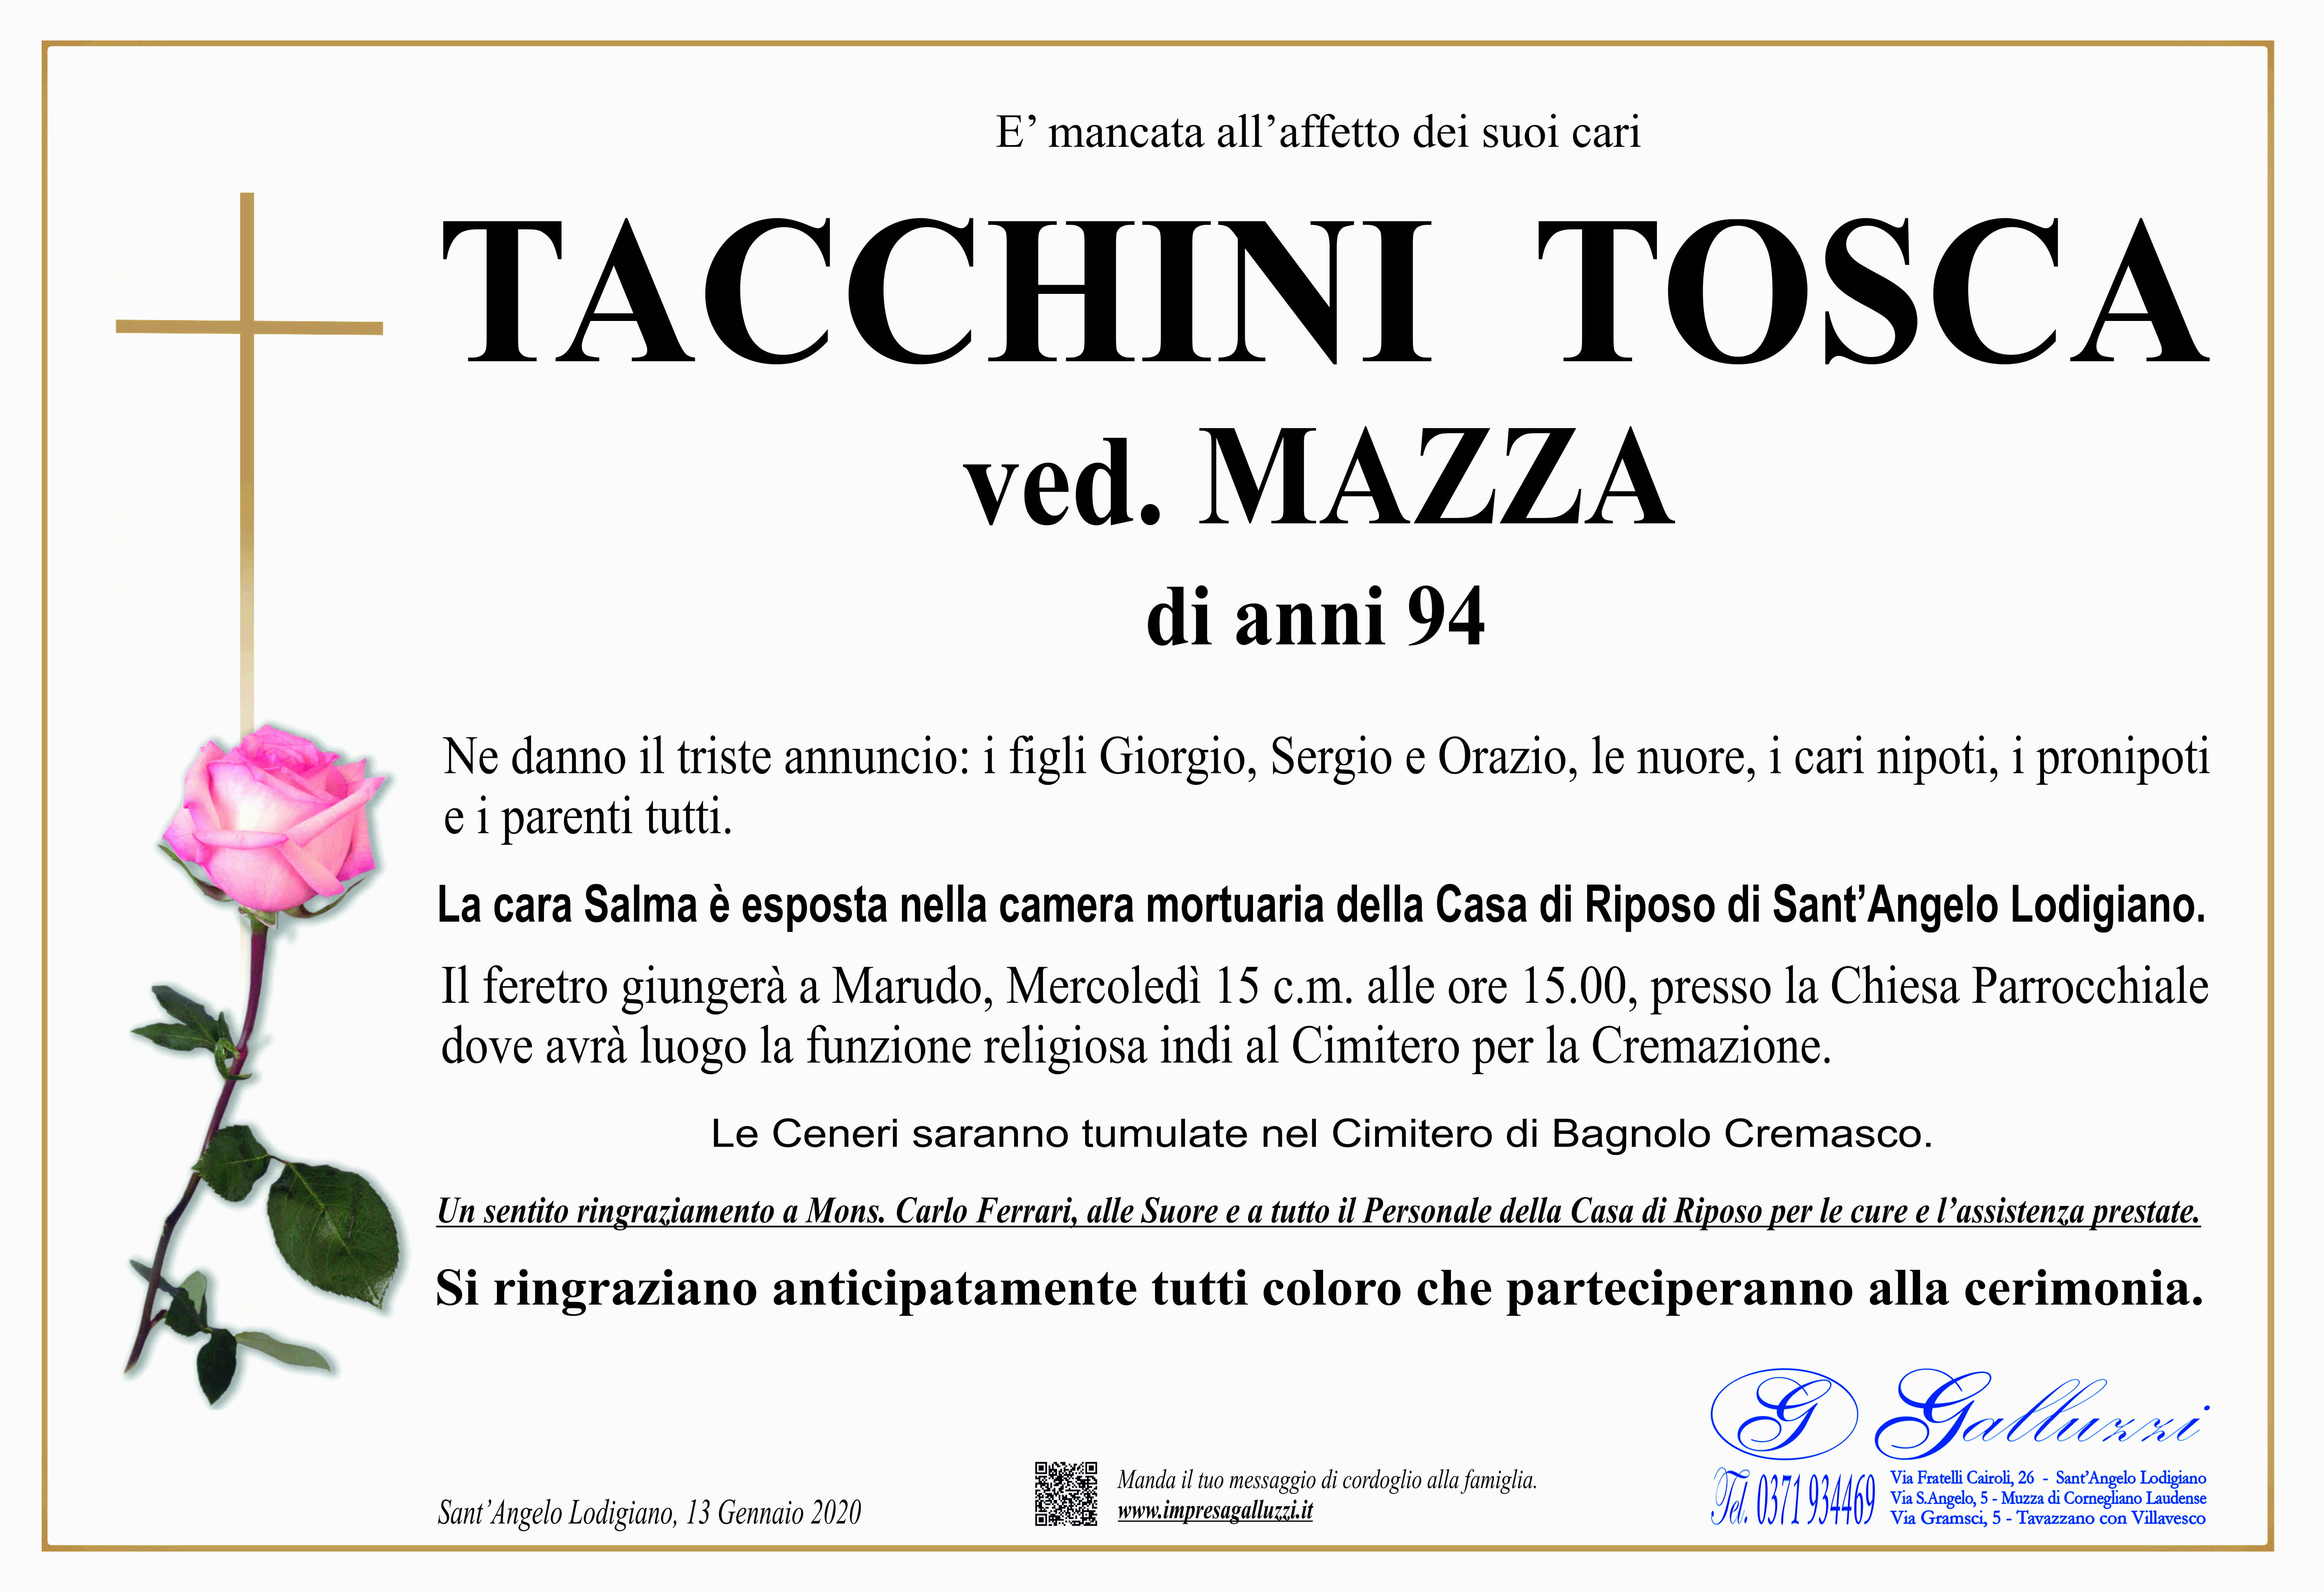 Tosca Tacchini